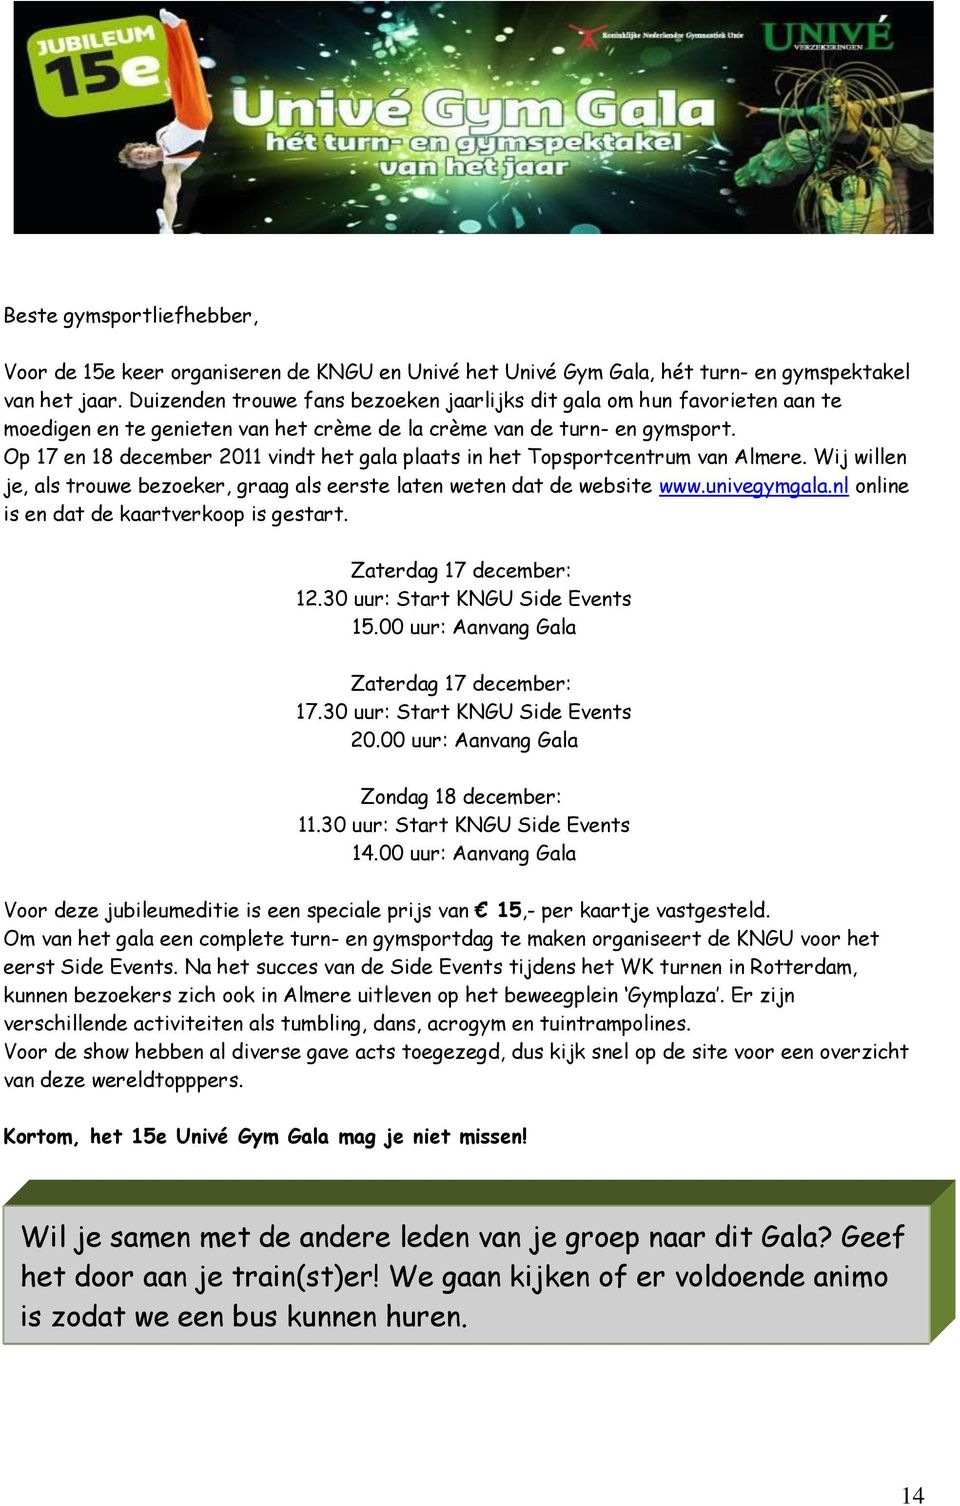 Op 17 en 18 december 2011 vindt het gala plaats in het Topsportcentrum van Almere. Wij willen je, als trouwe bezoeker, graag als eerste laten weten dat de website www.univegymgala.